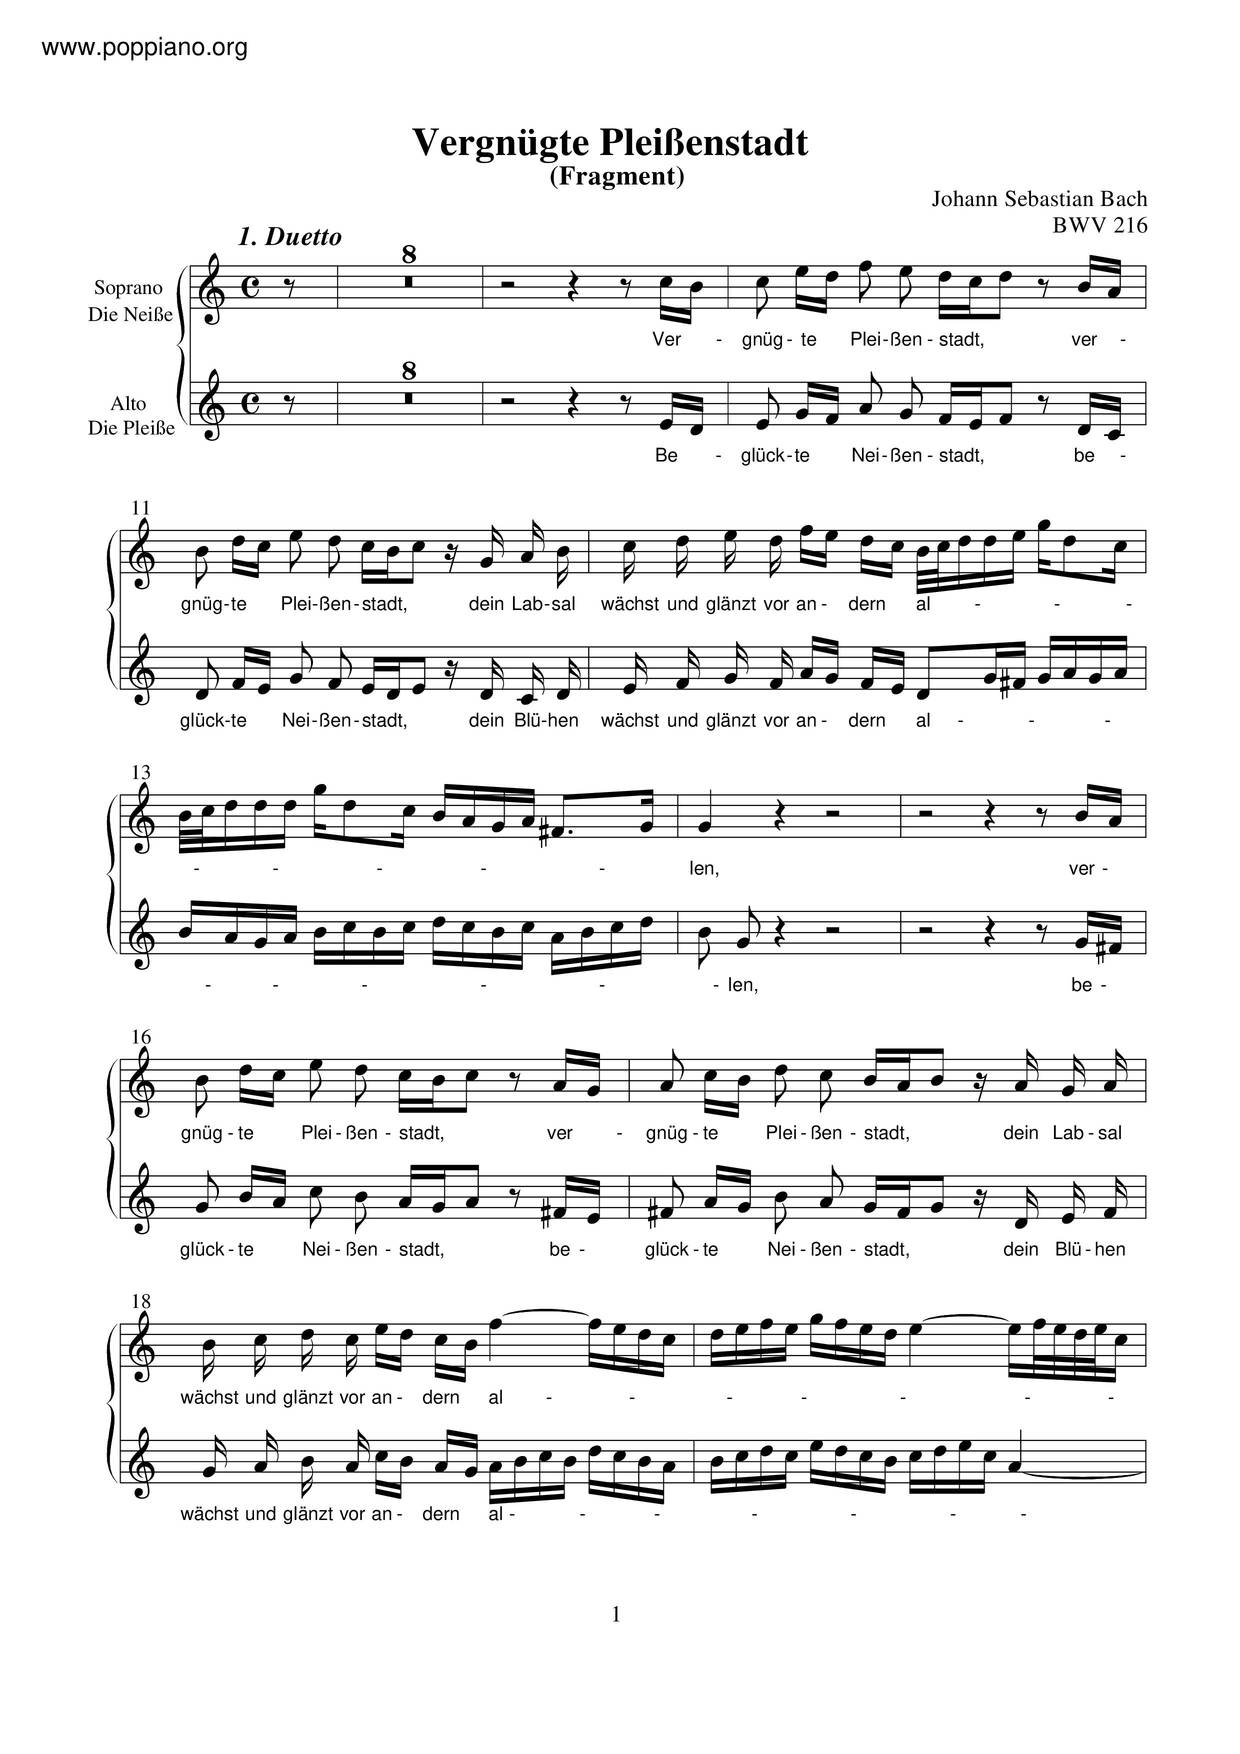 Vergnügte Pleissenstadt, BWV 216 Score